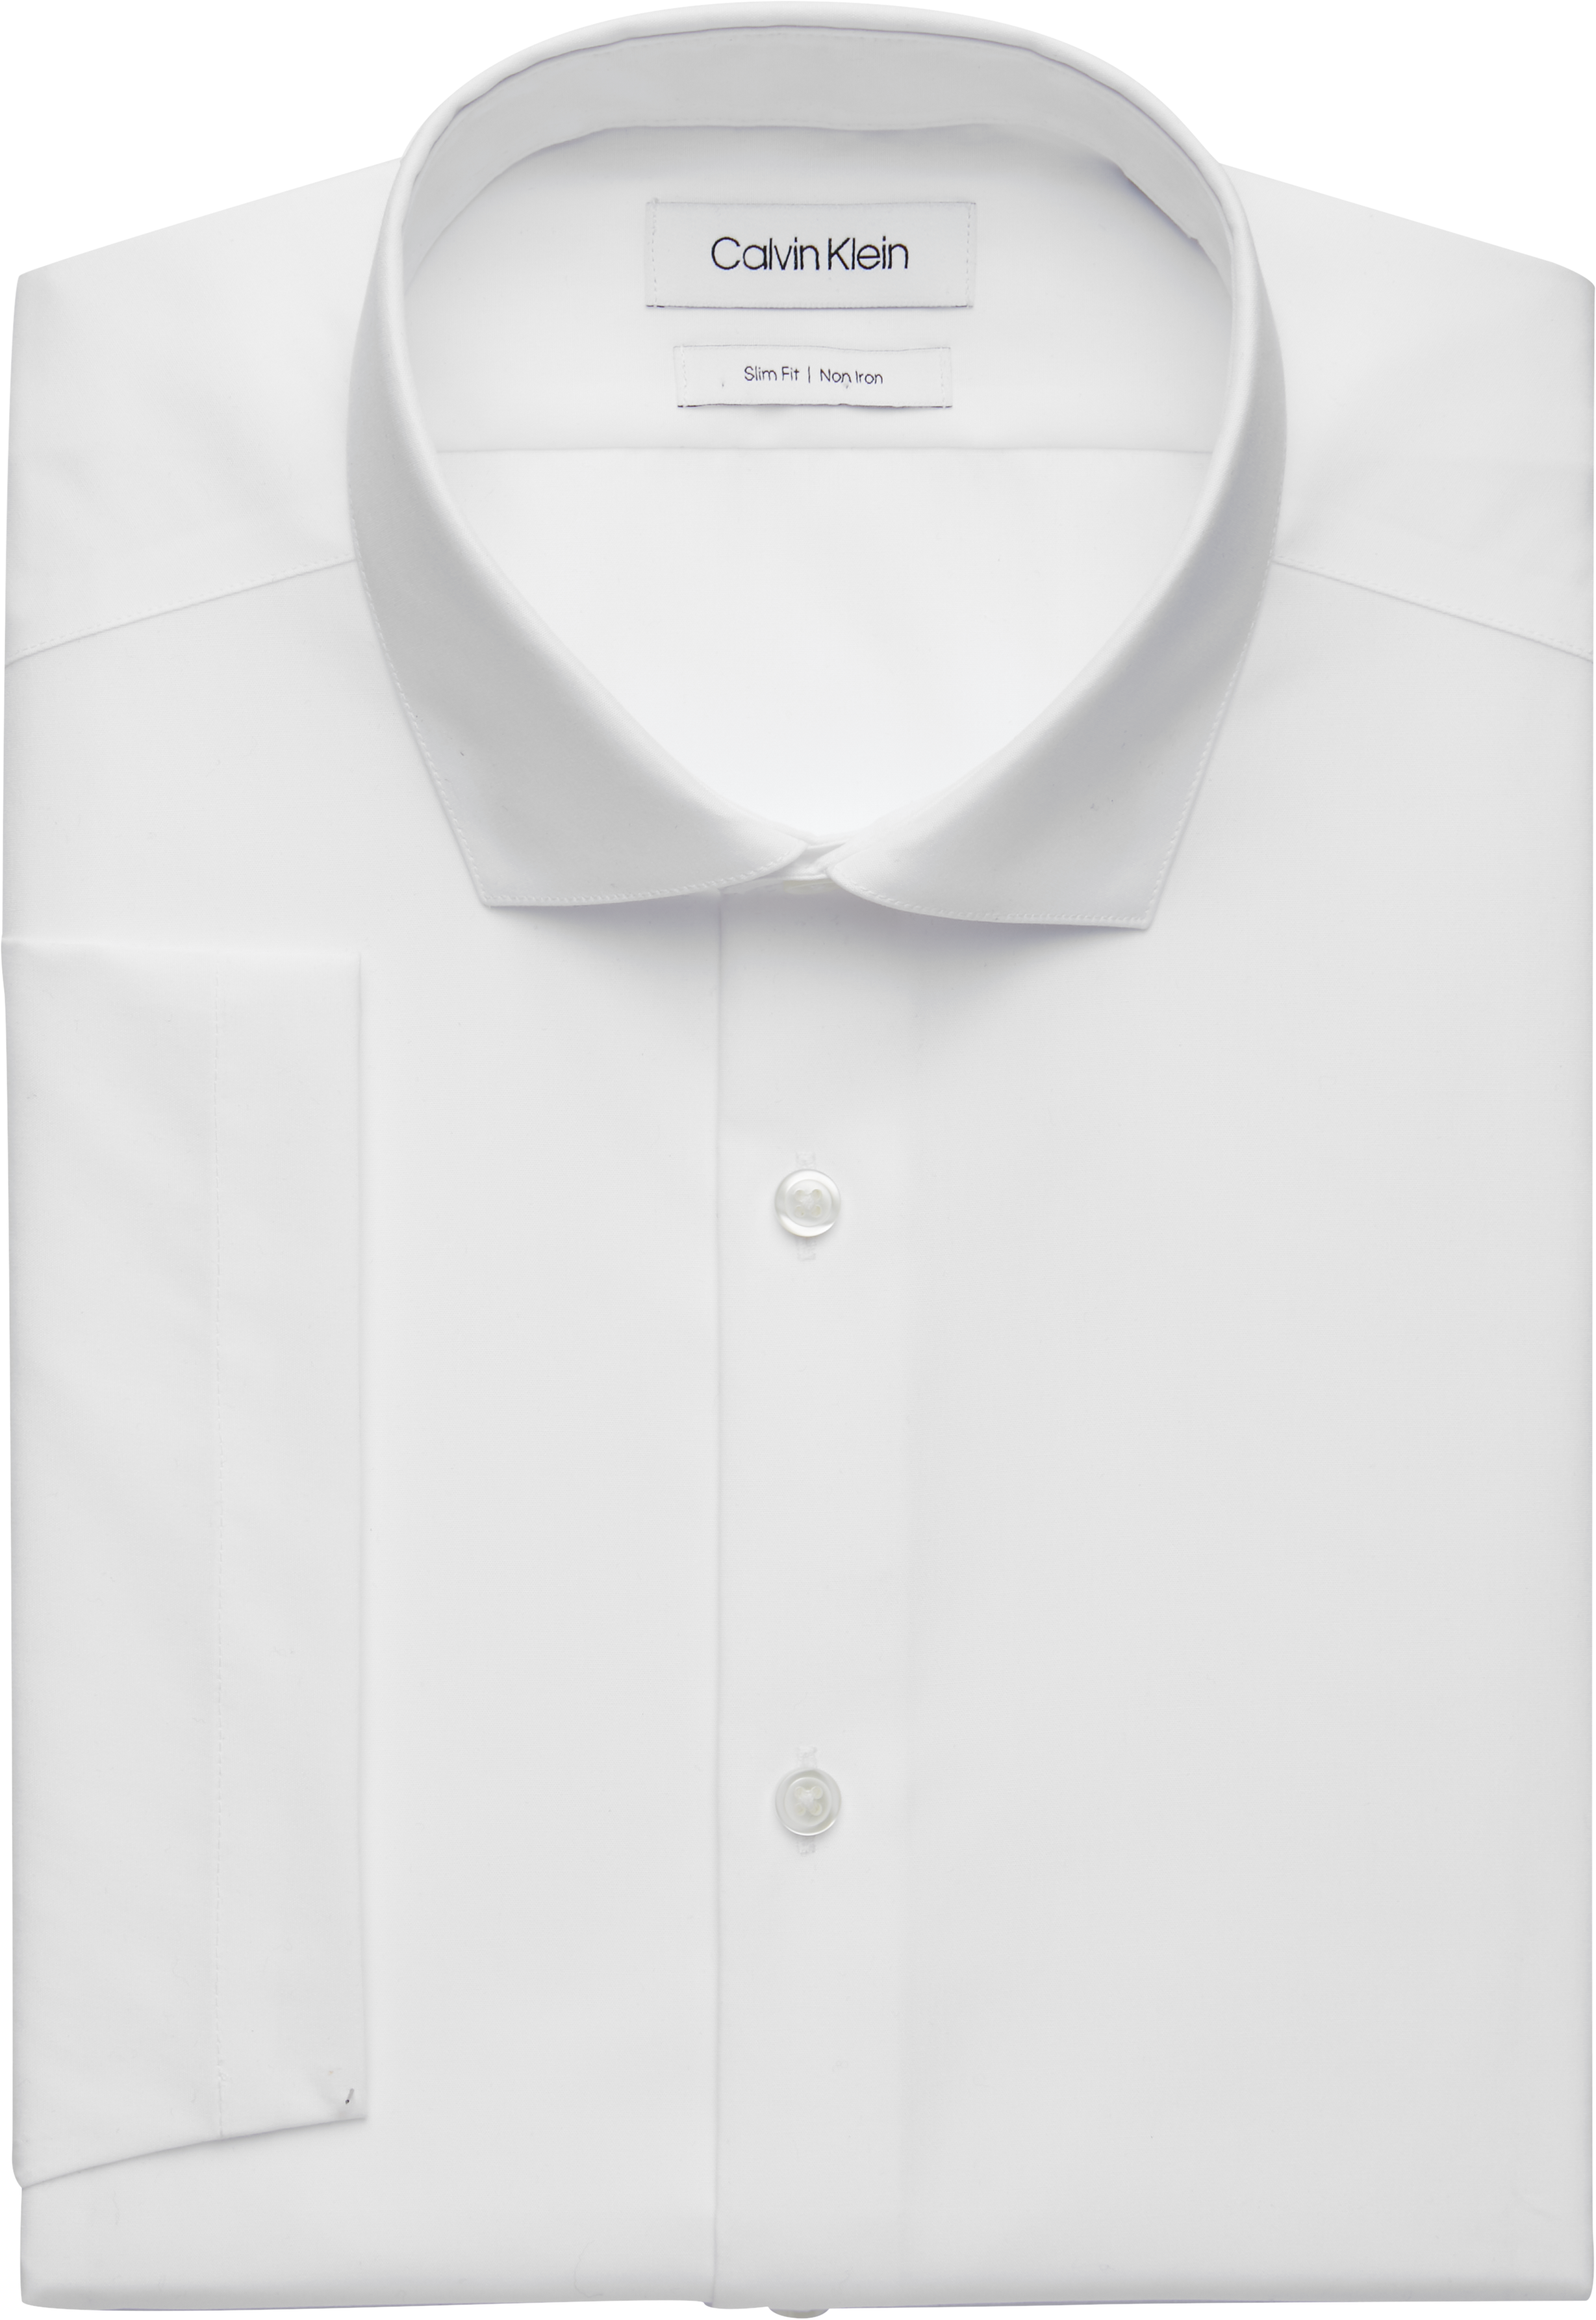 short sleeve white dress shirt slim fit